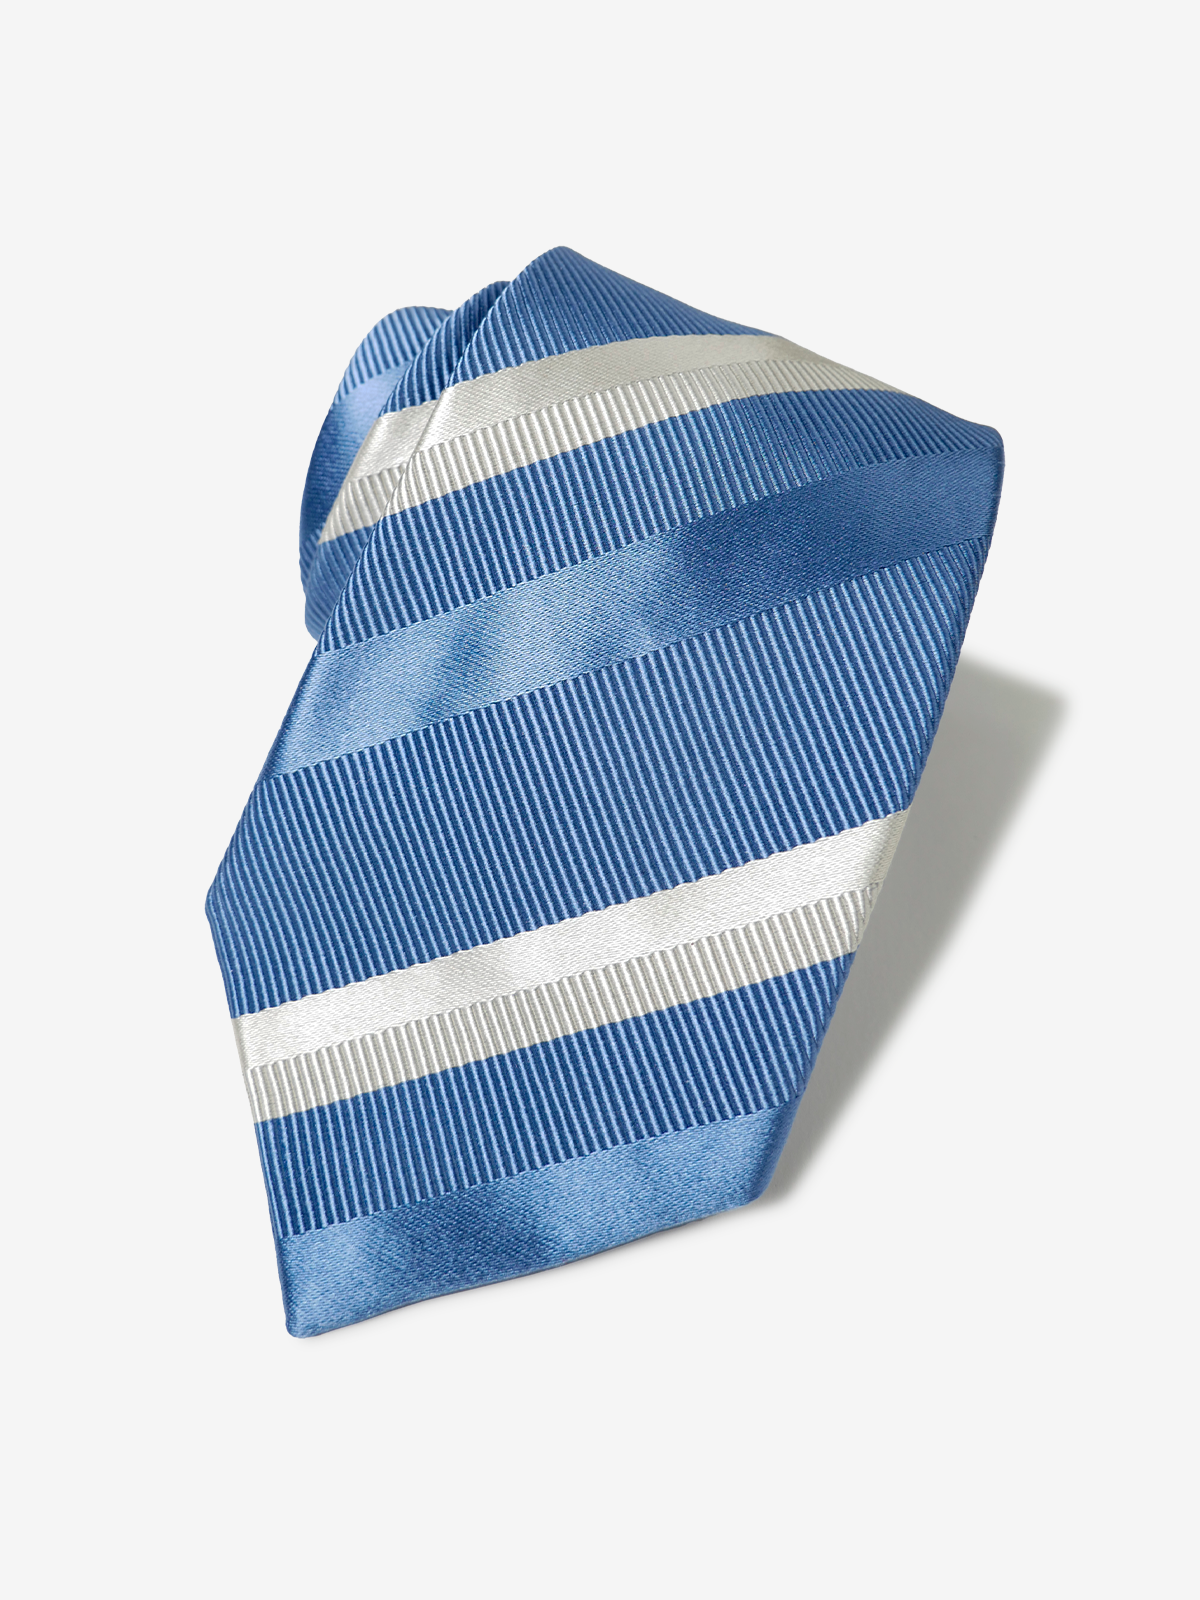 Striped Necktie｜ライトブルー